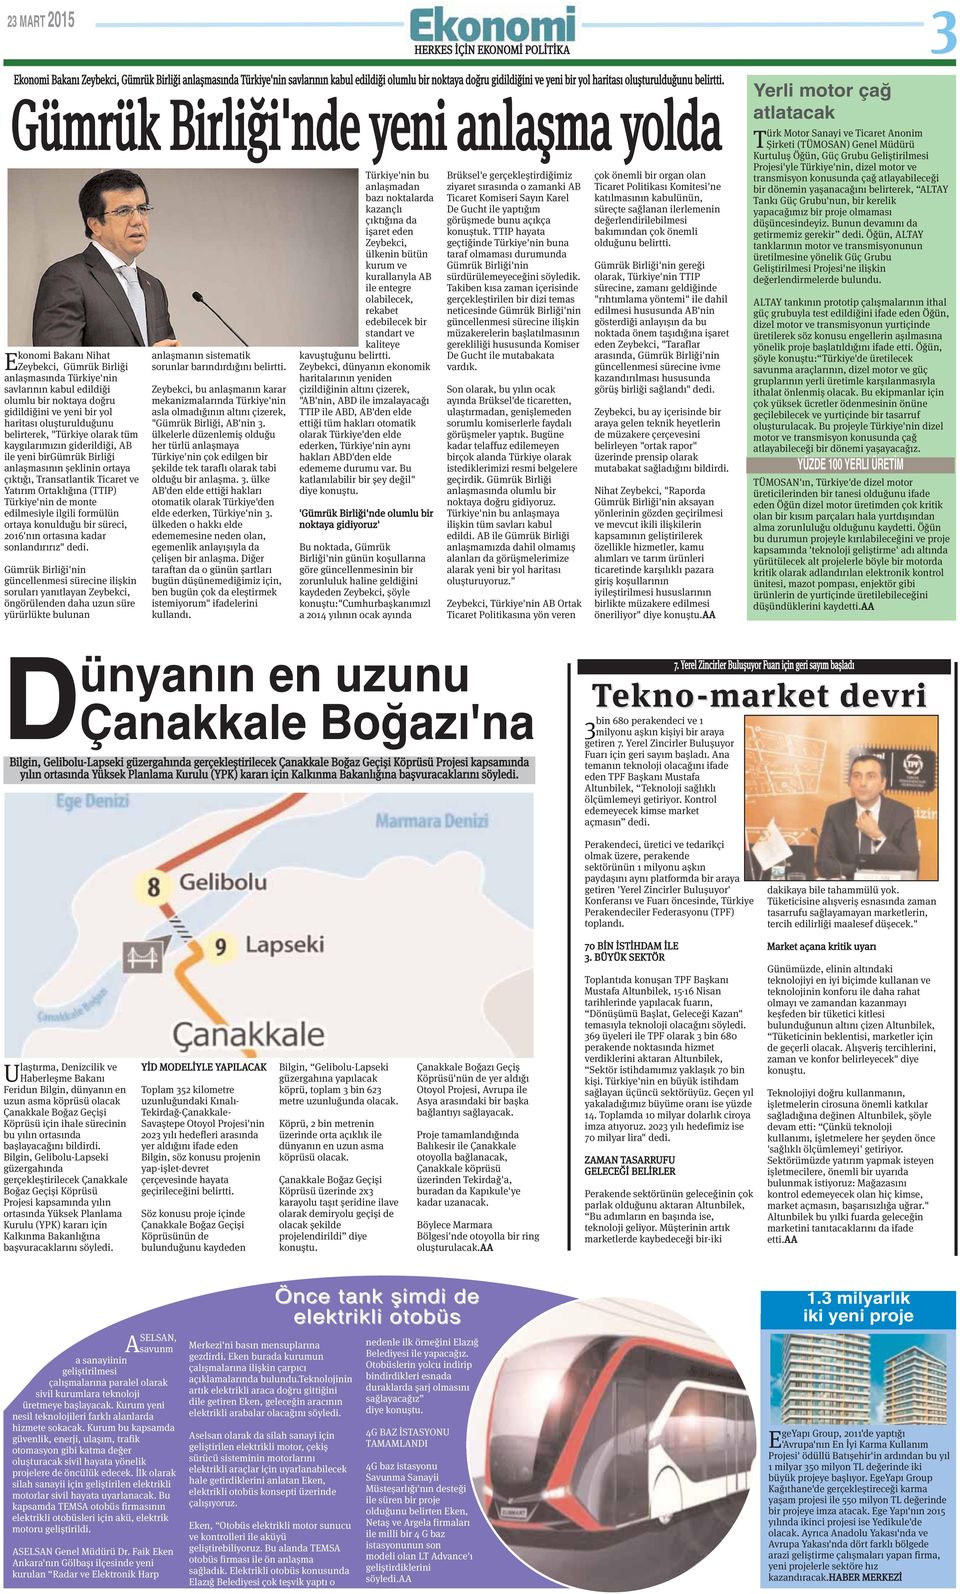 Gümrük Birliği'nde yeni anlaşma yolda konomi Bakanı Nihat EZeybekci, Gümrük Birliği anlaşmasında Türkiye'nin savlarının kabul edildiği olumlu bir noktaya doğru gidildiğini ve yeni bir yol haritası